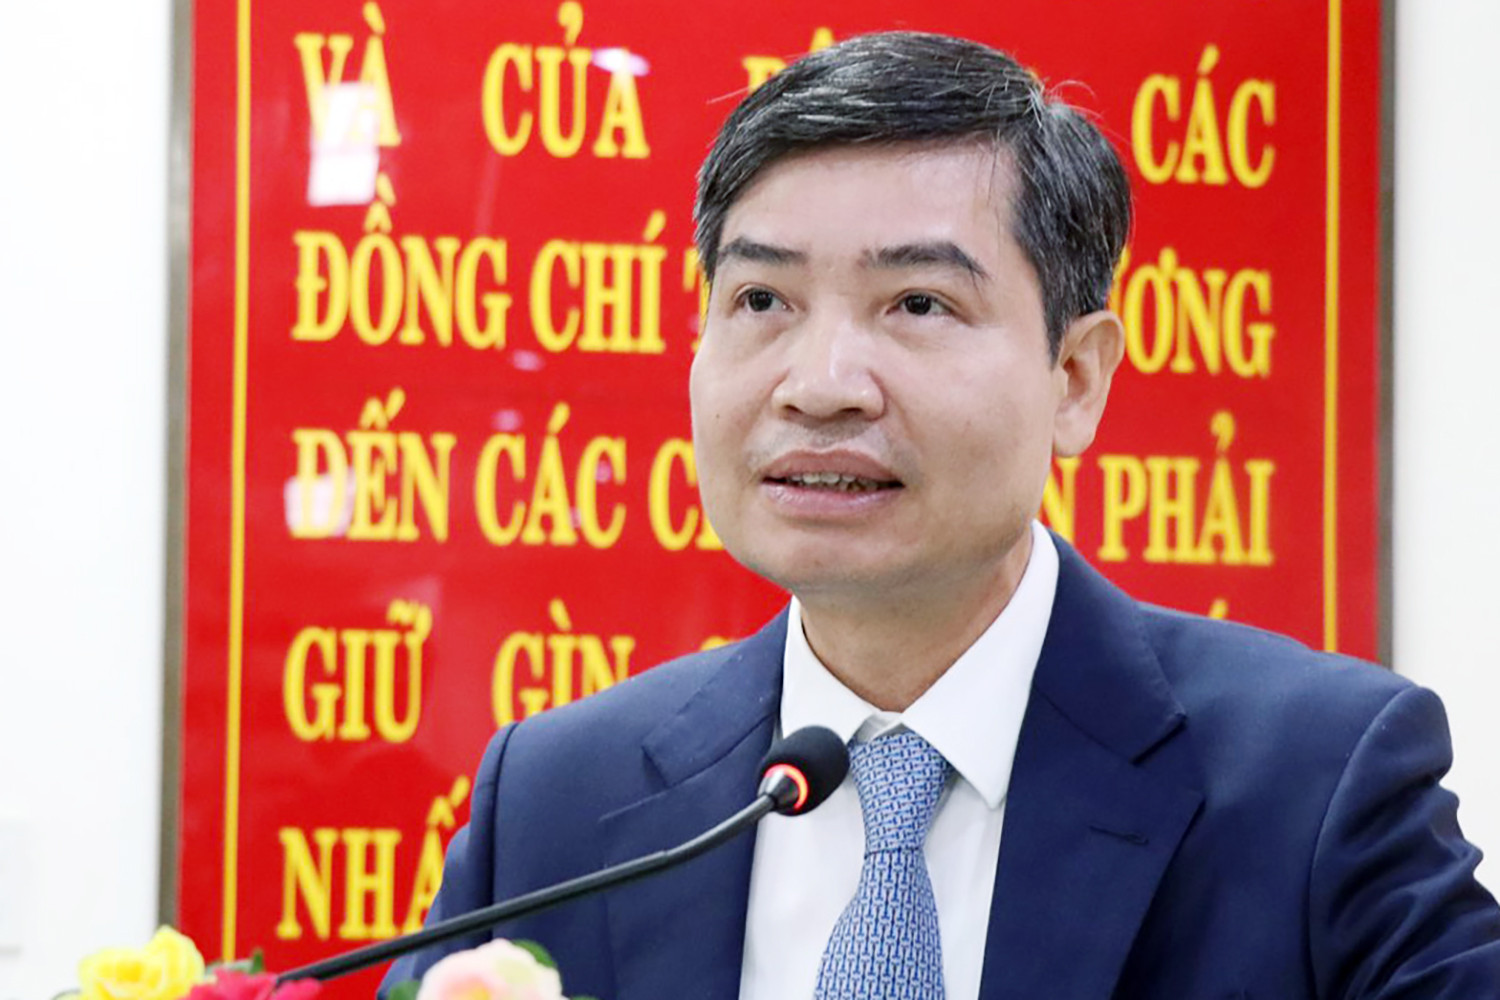 Thứ trưởng Bộ Tài chính làm Phó Bí thư, giới thiệu bầu Chủ tịch Phú Yên